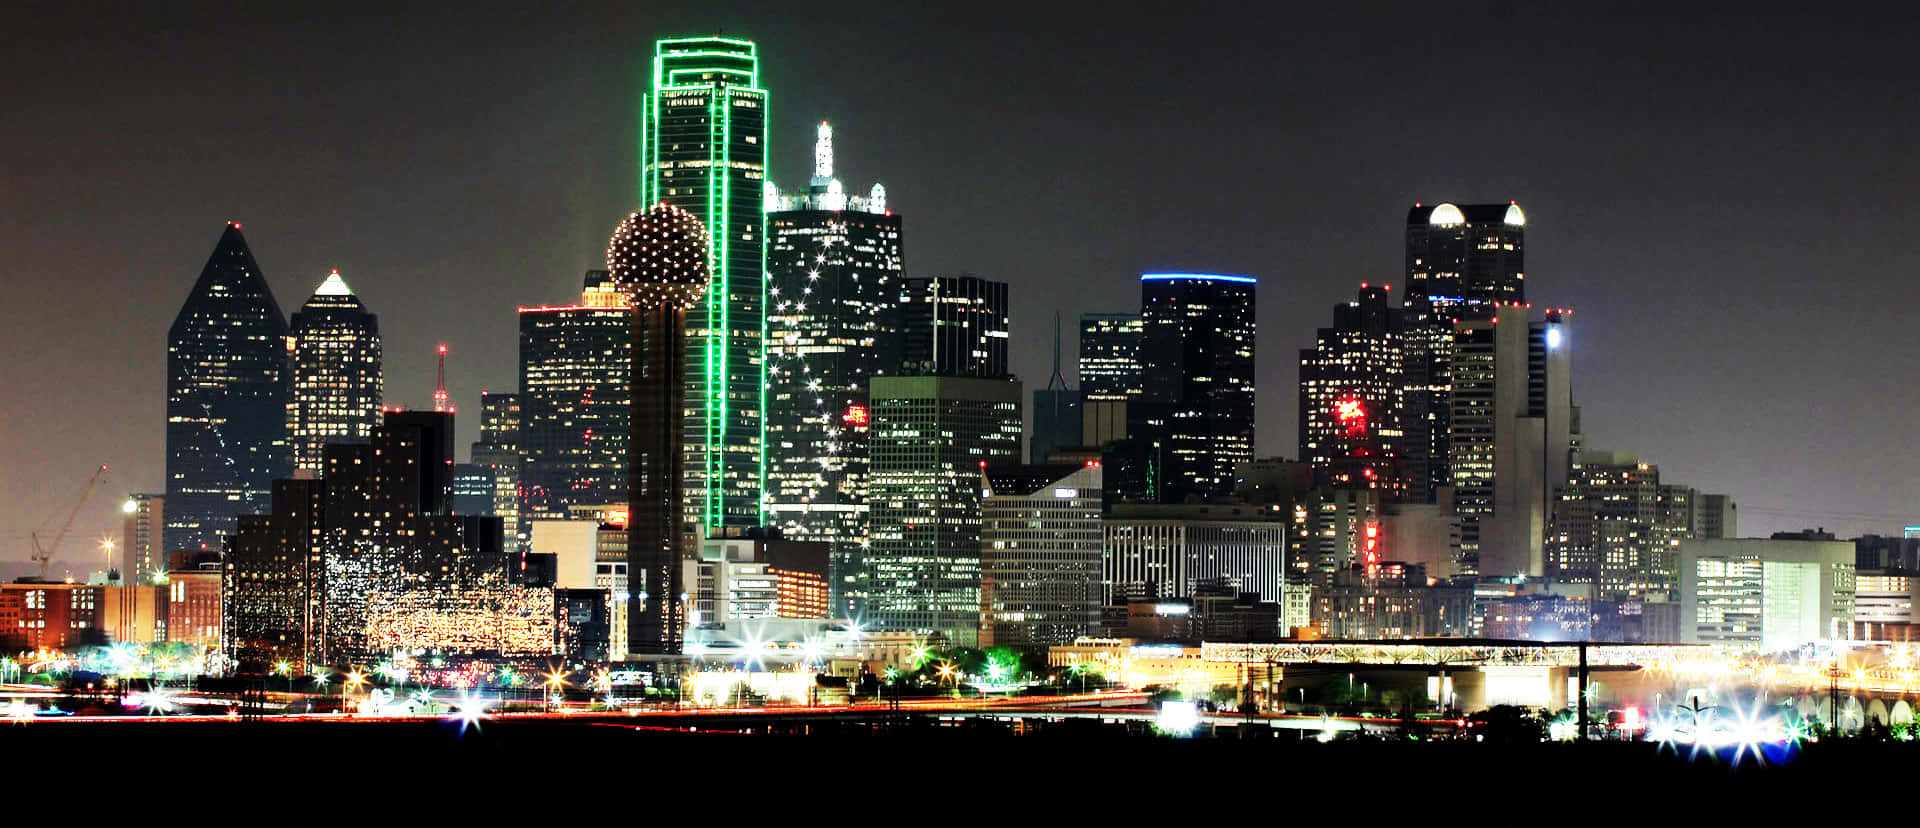 Vistaaérea De La Hermosa Ciudad De Dallas, Texas. Fondo de pantalla